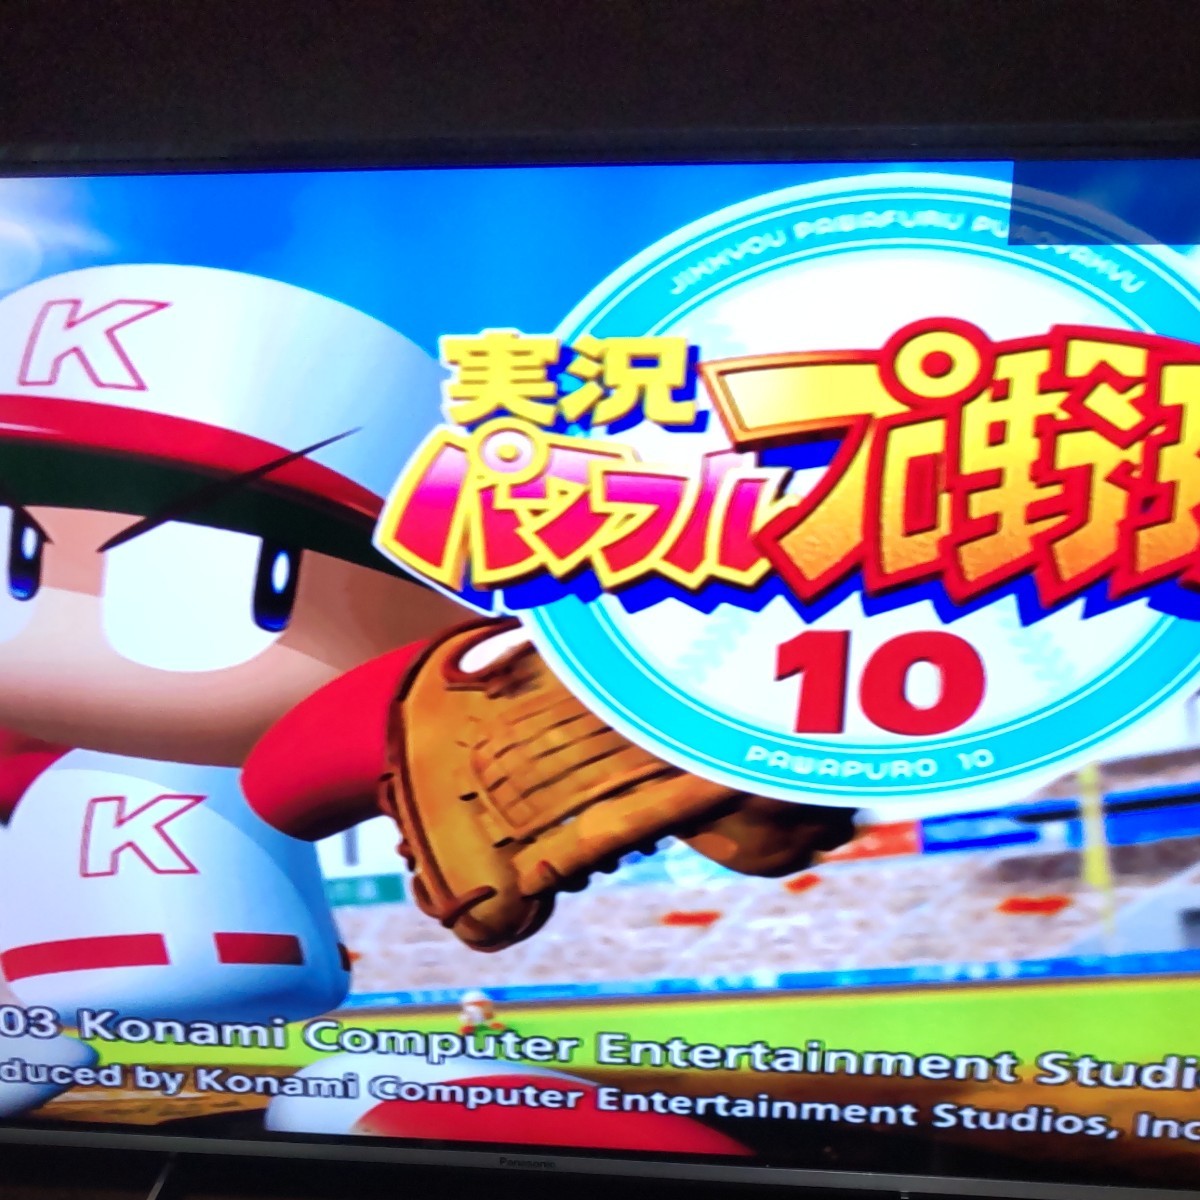 実況パワフルプロ野球10 PS2ソフト PS2